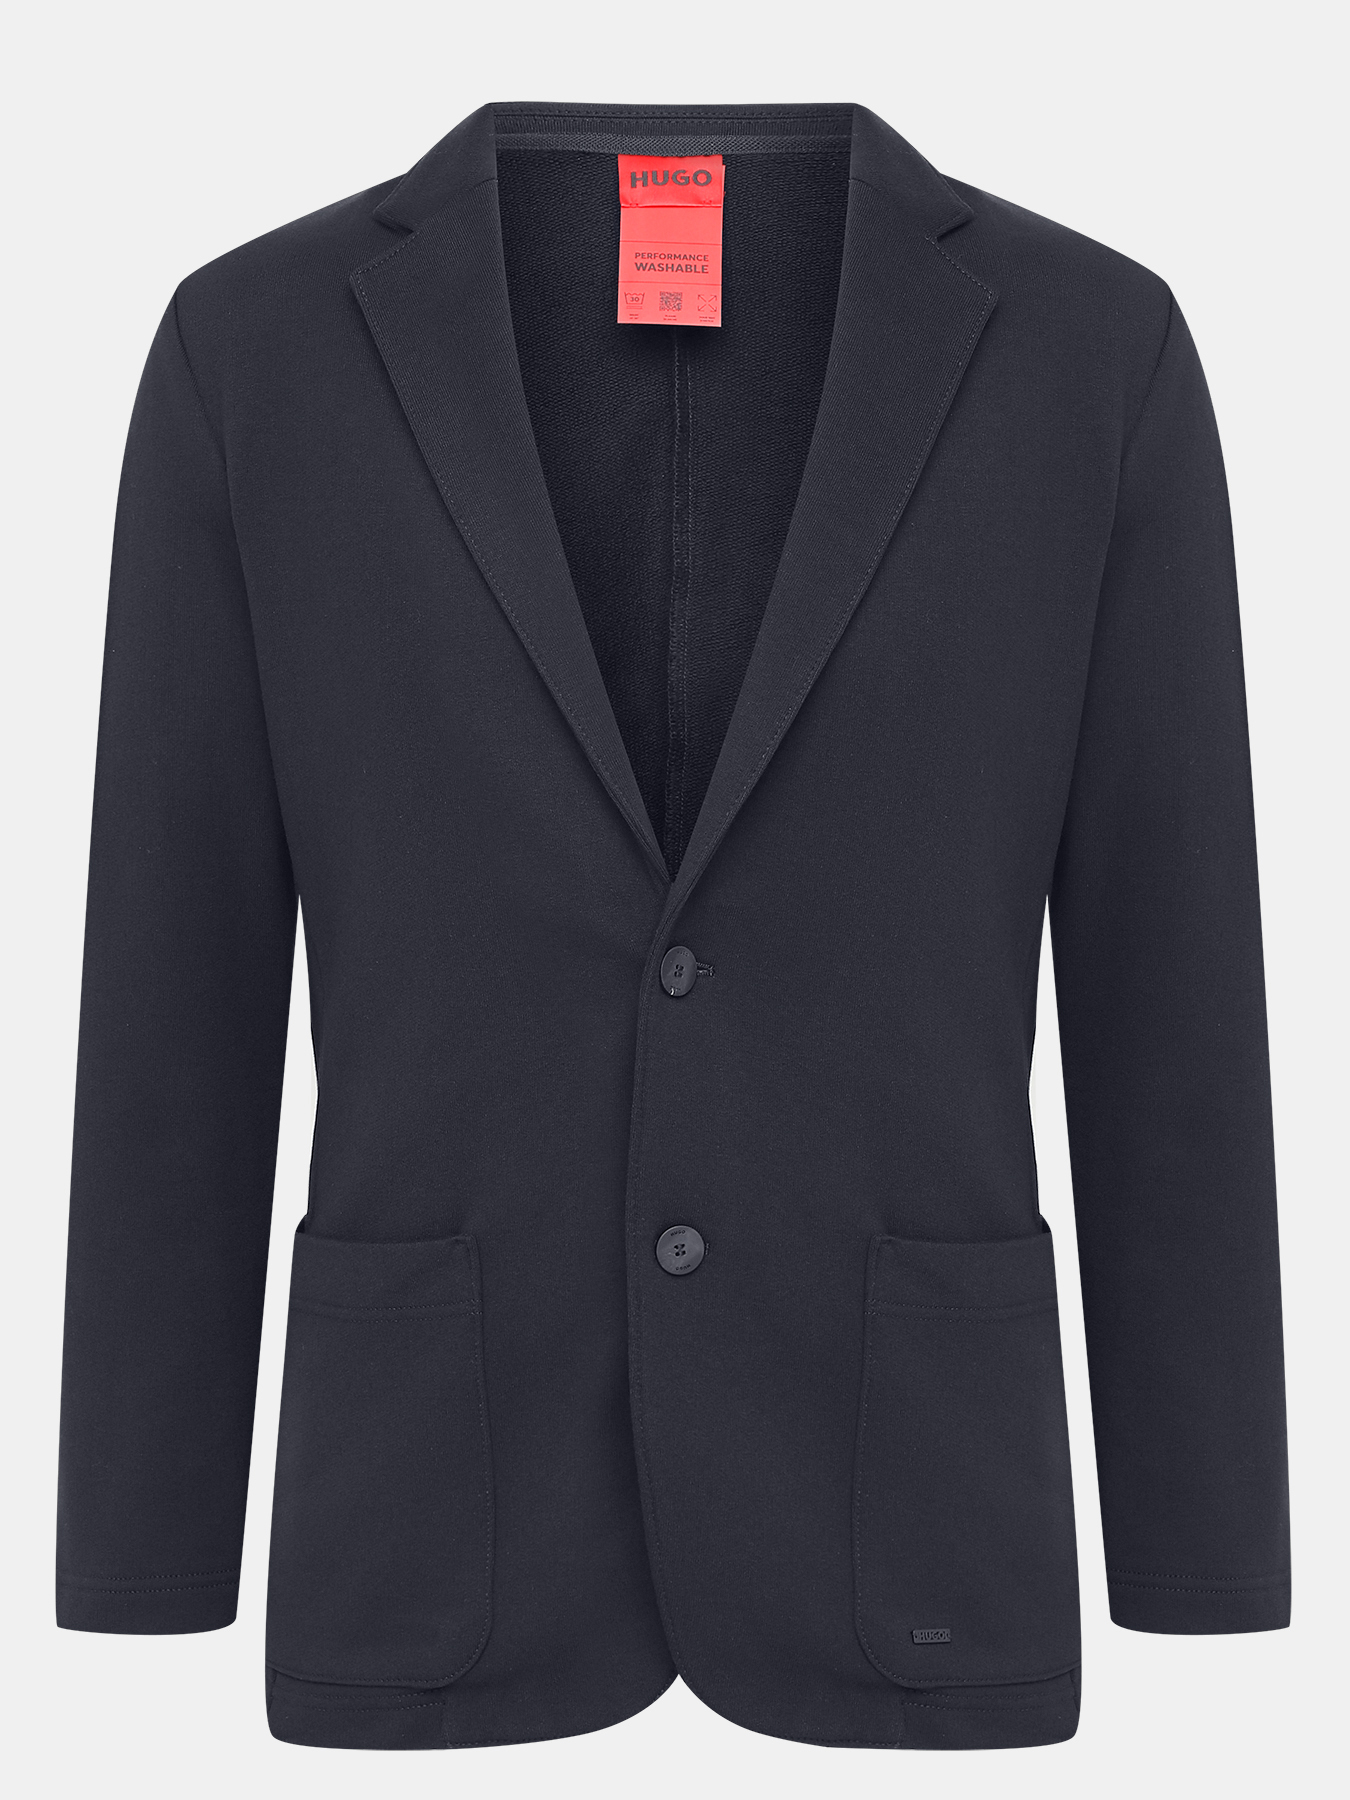 Пиджак Henryco HUGO 423621-043, цвет темно-синий, размер 48-50